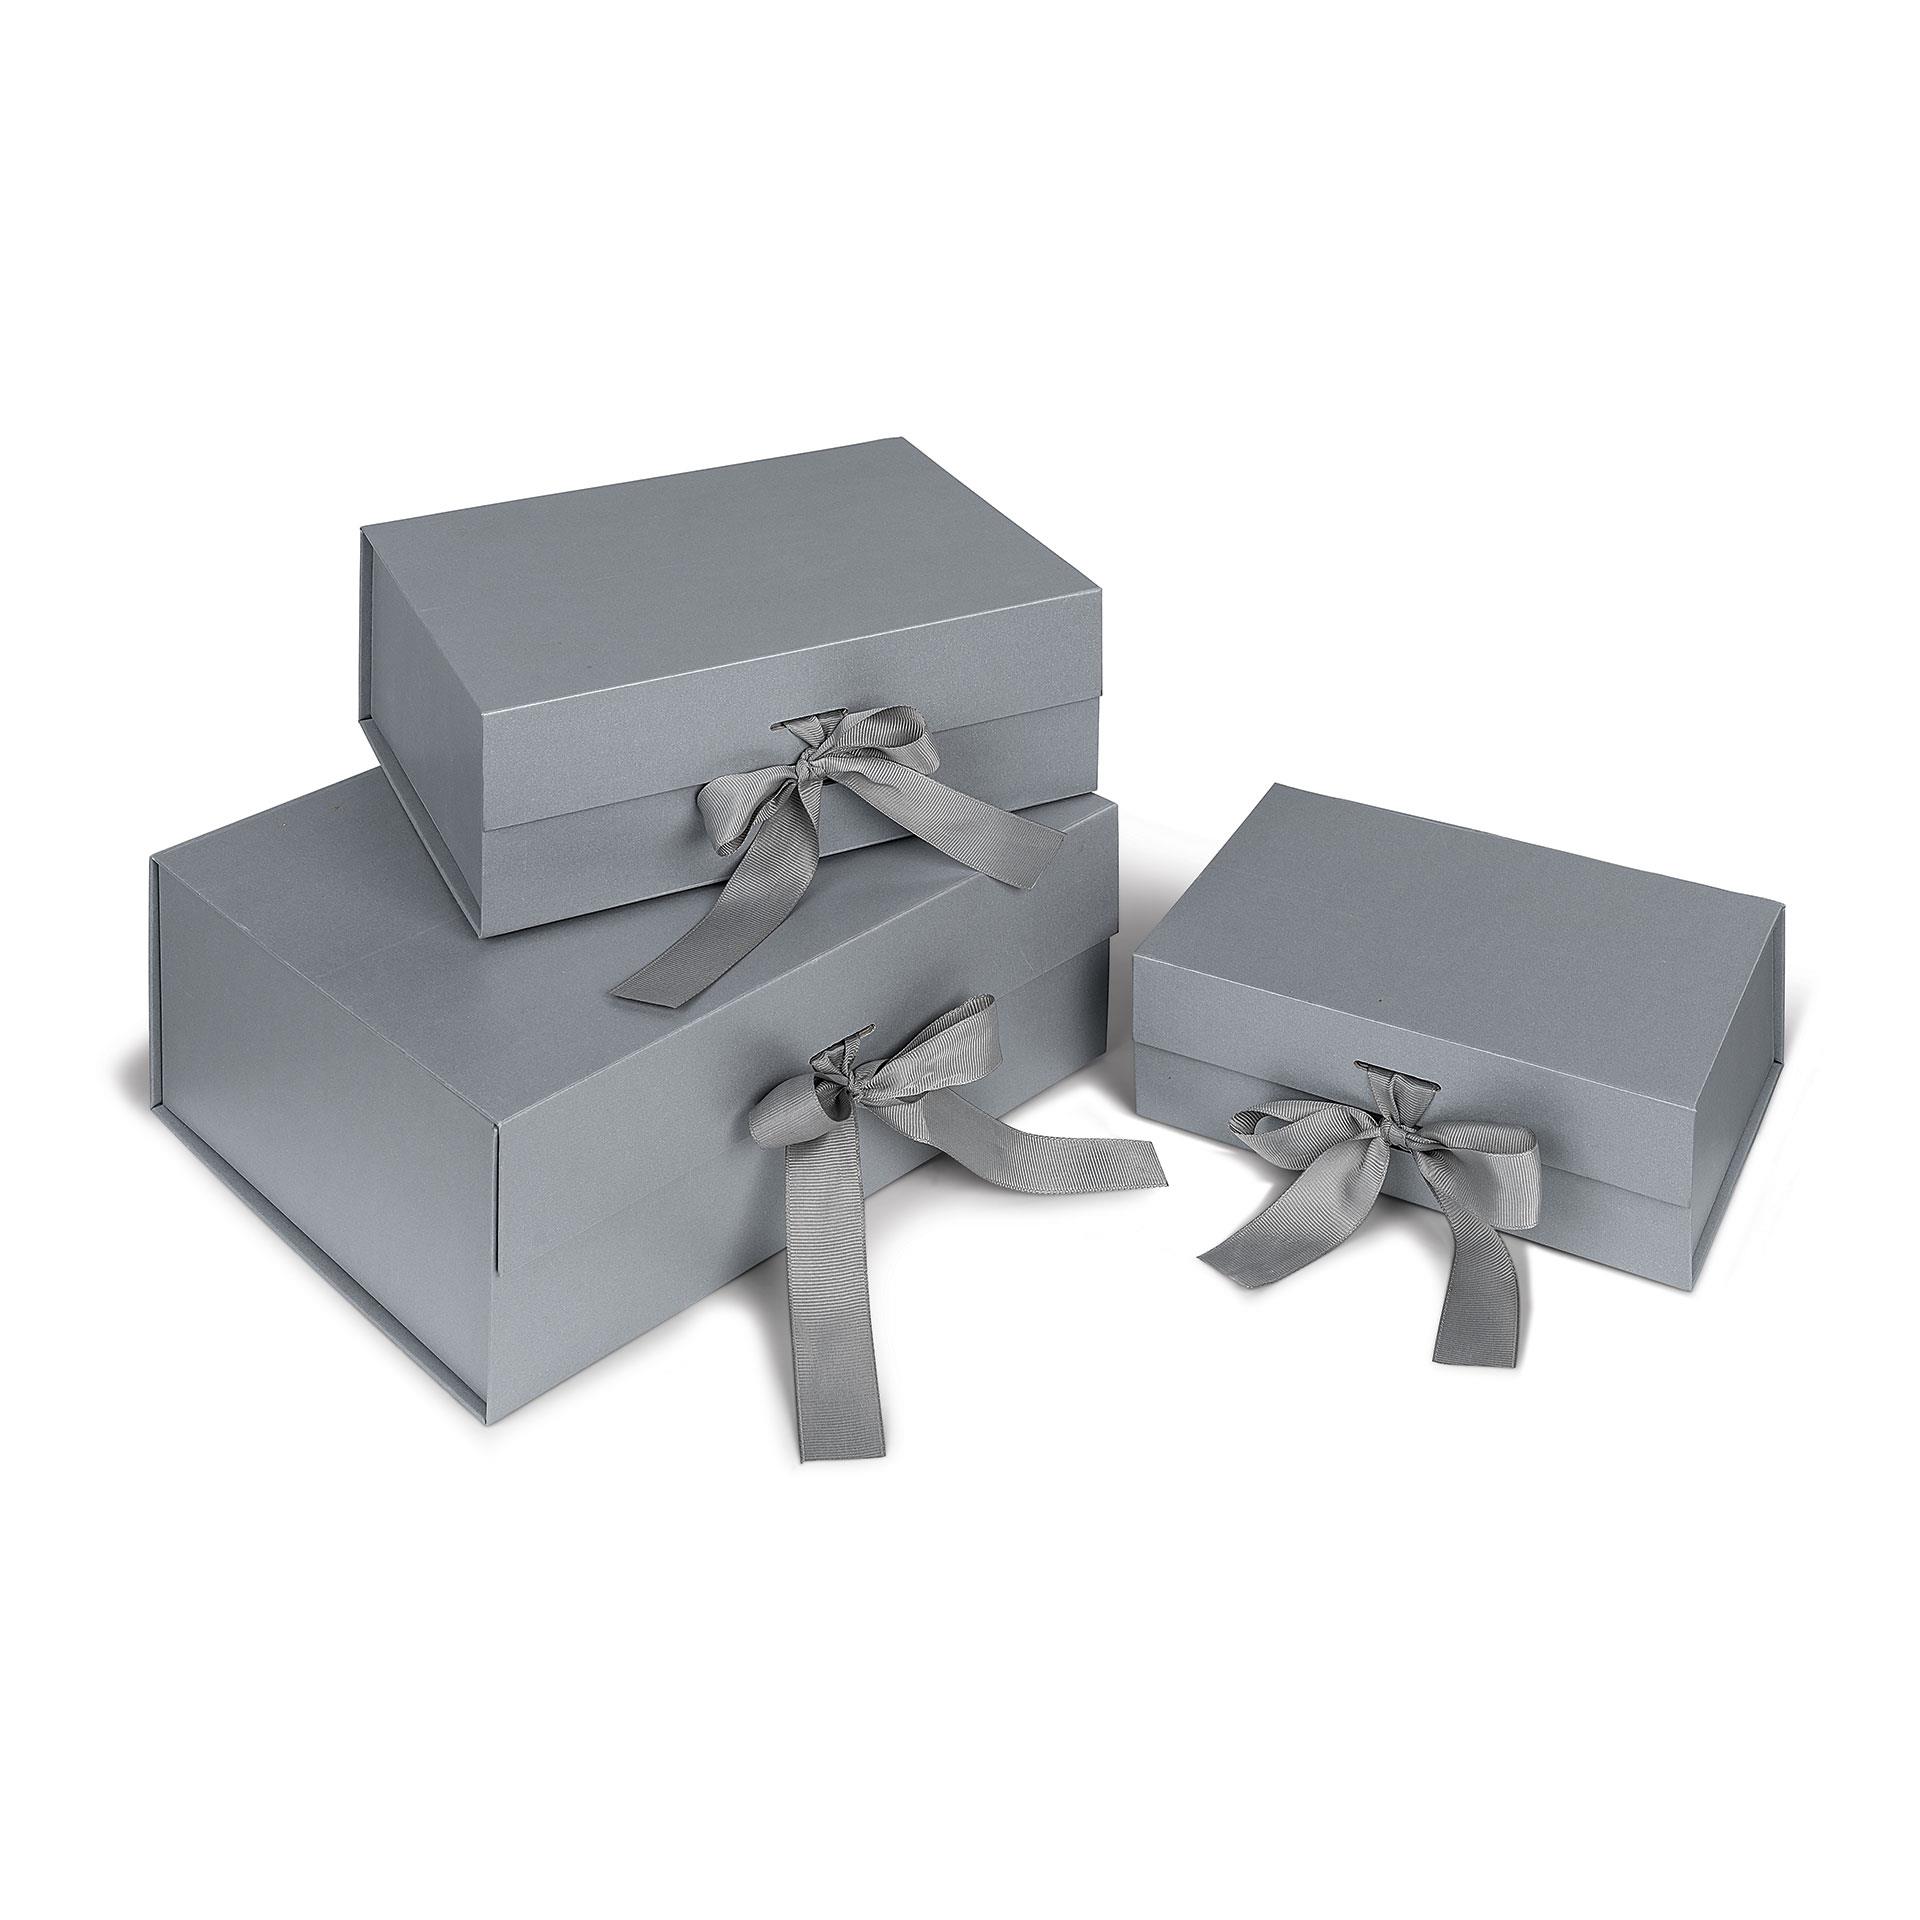 Boîtes cadeaux magnétiques de luxe, set de 3 pces